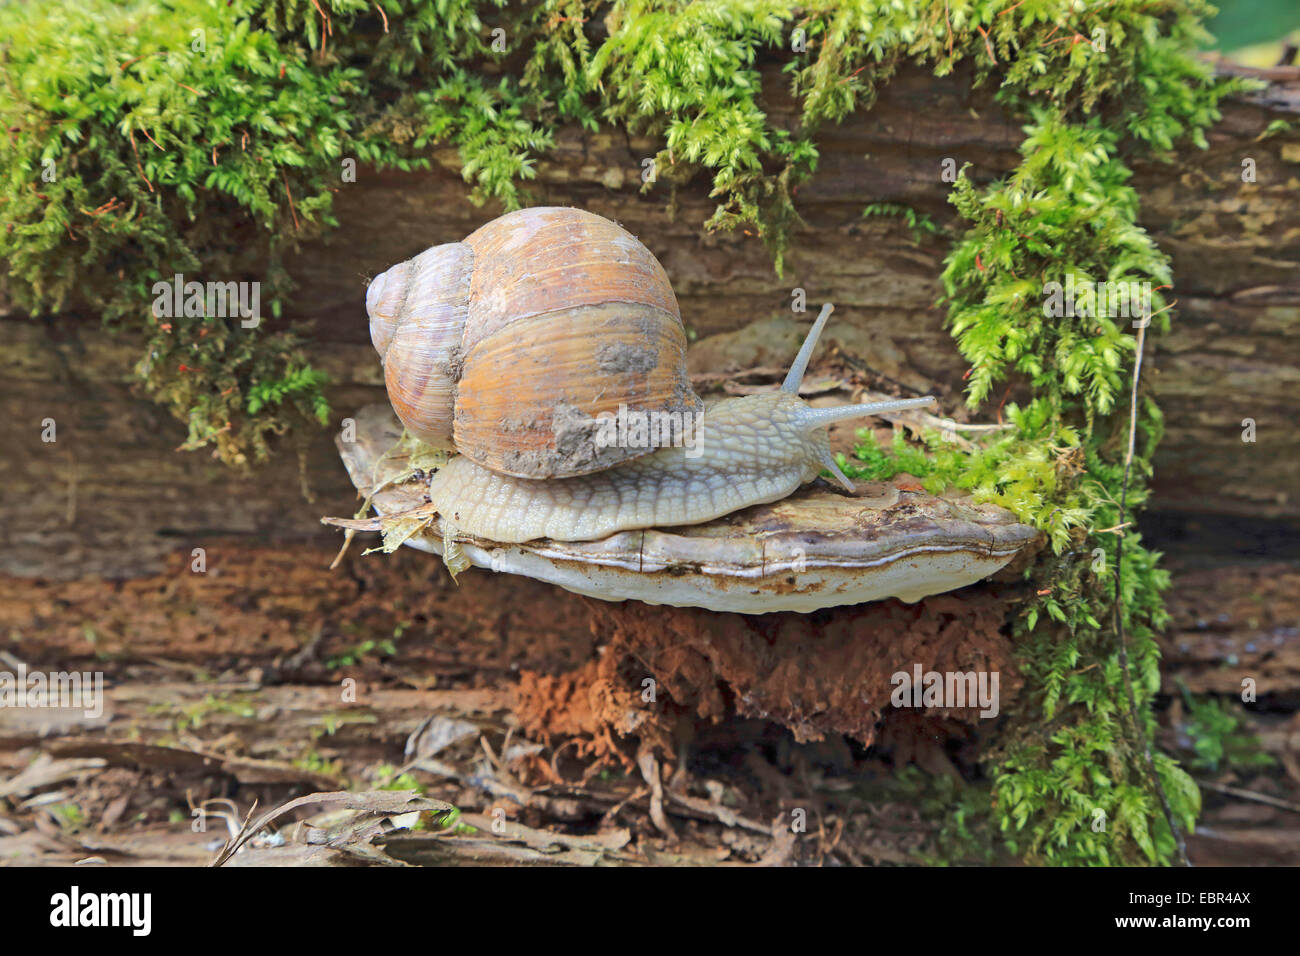 Roman snail, escargot, escargot snail, edible snail, apple snail, grapevine snail, vineyard snail, vine snail (Helix pomatia), on a bracket fungi, Germany Stock Photo